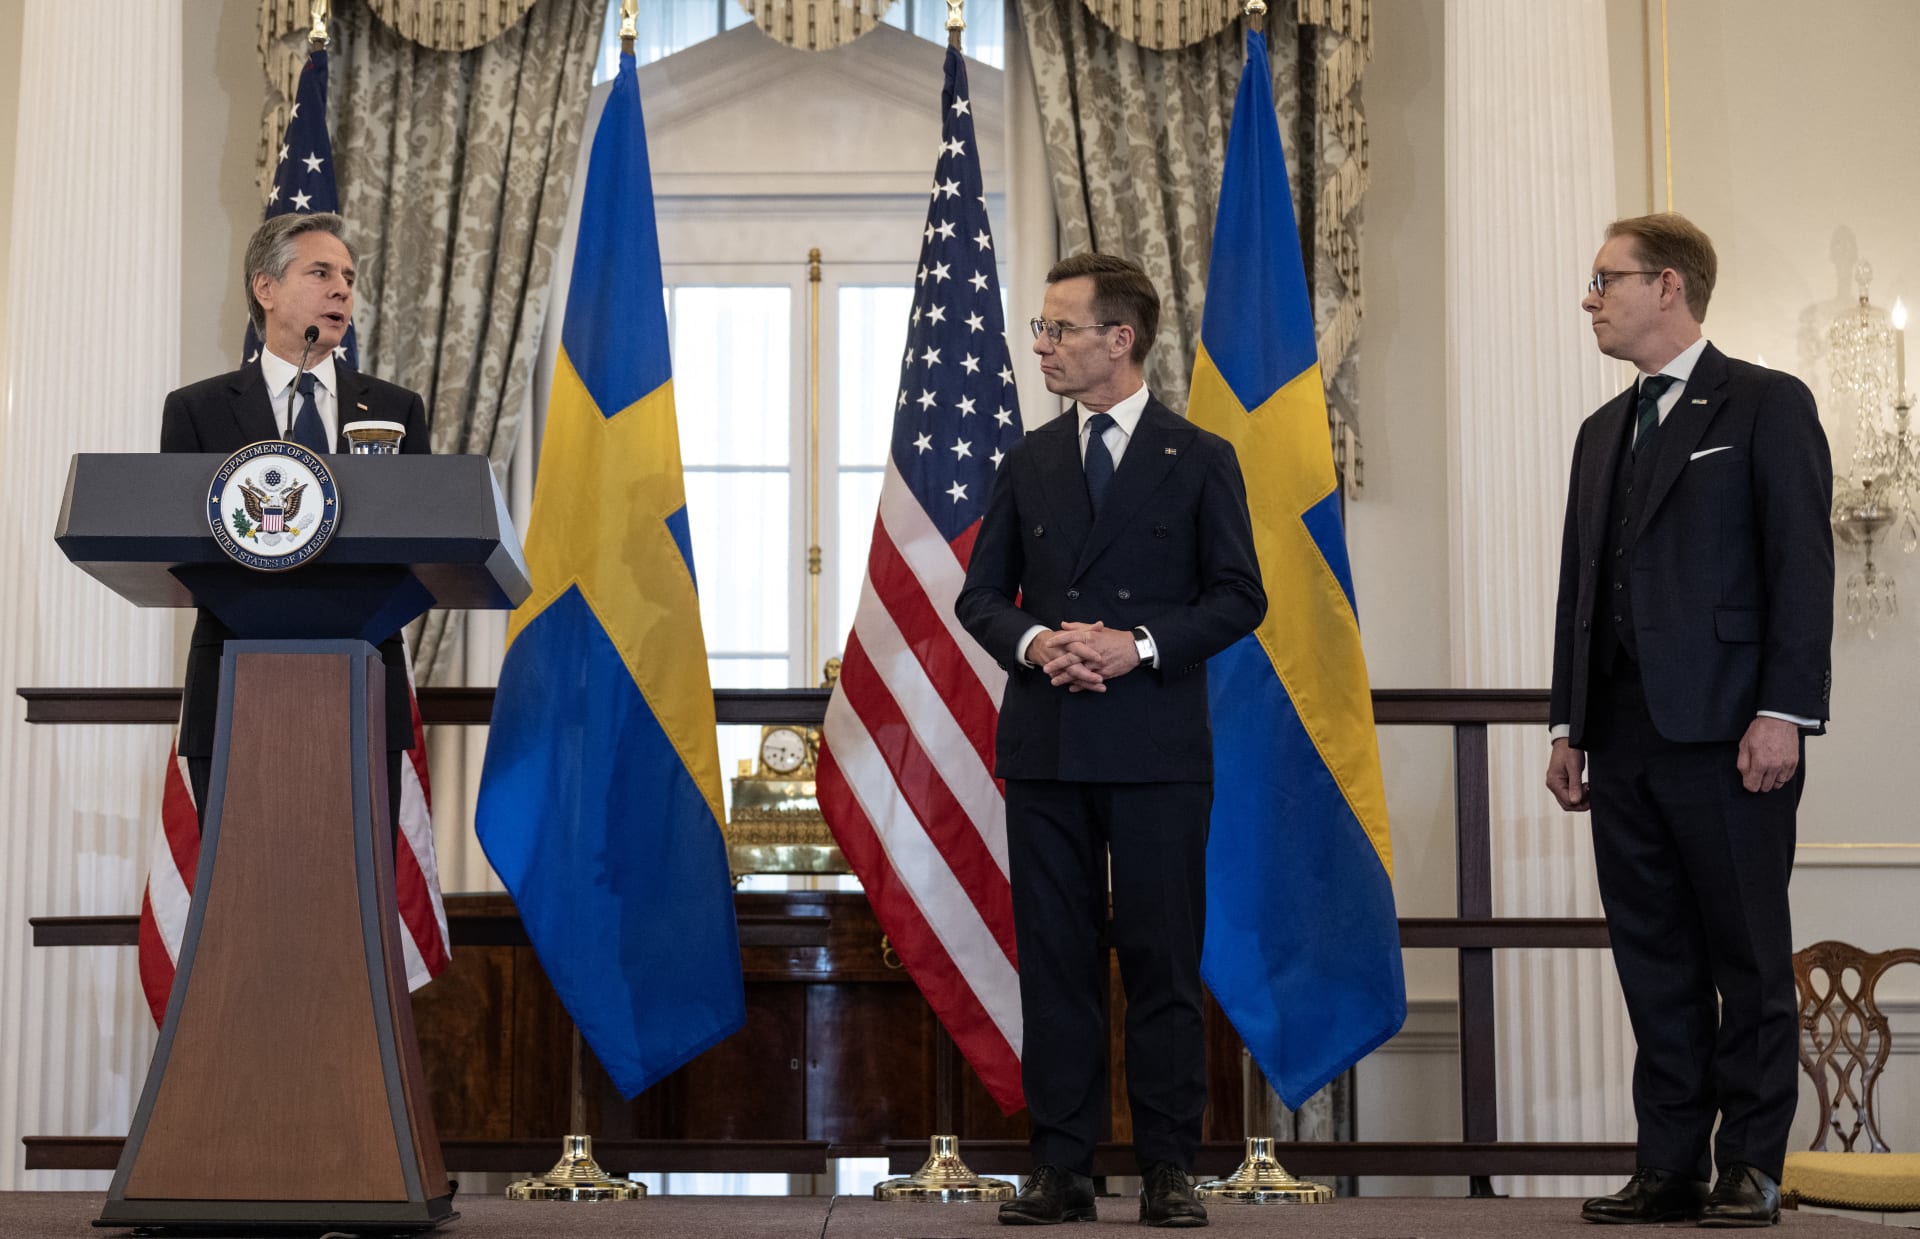 السويد تصبح رسميا العضو رقم 32 في حلف "الناتو".. وهكذا علق بلينكن 